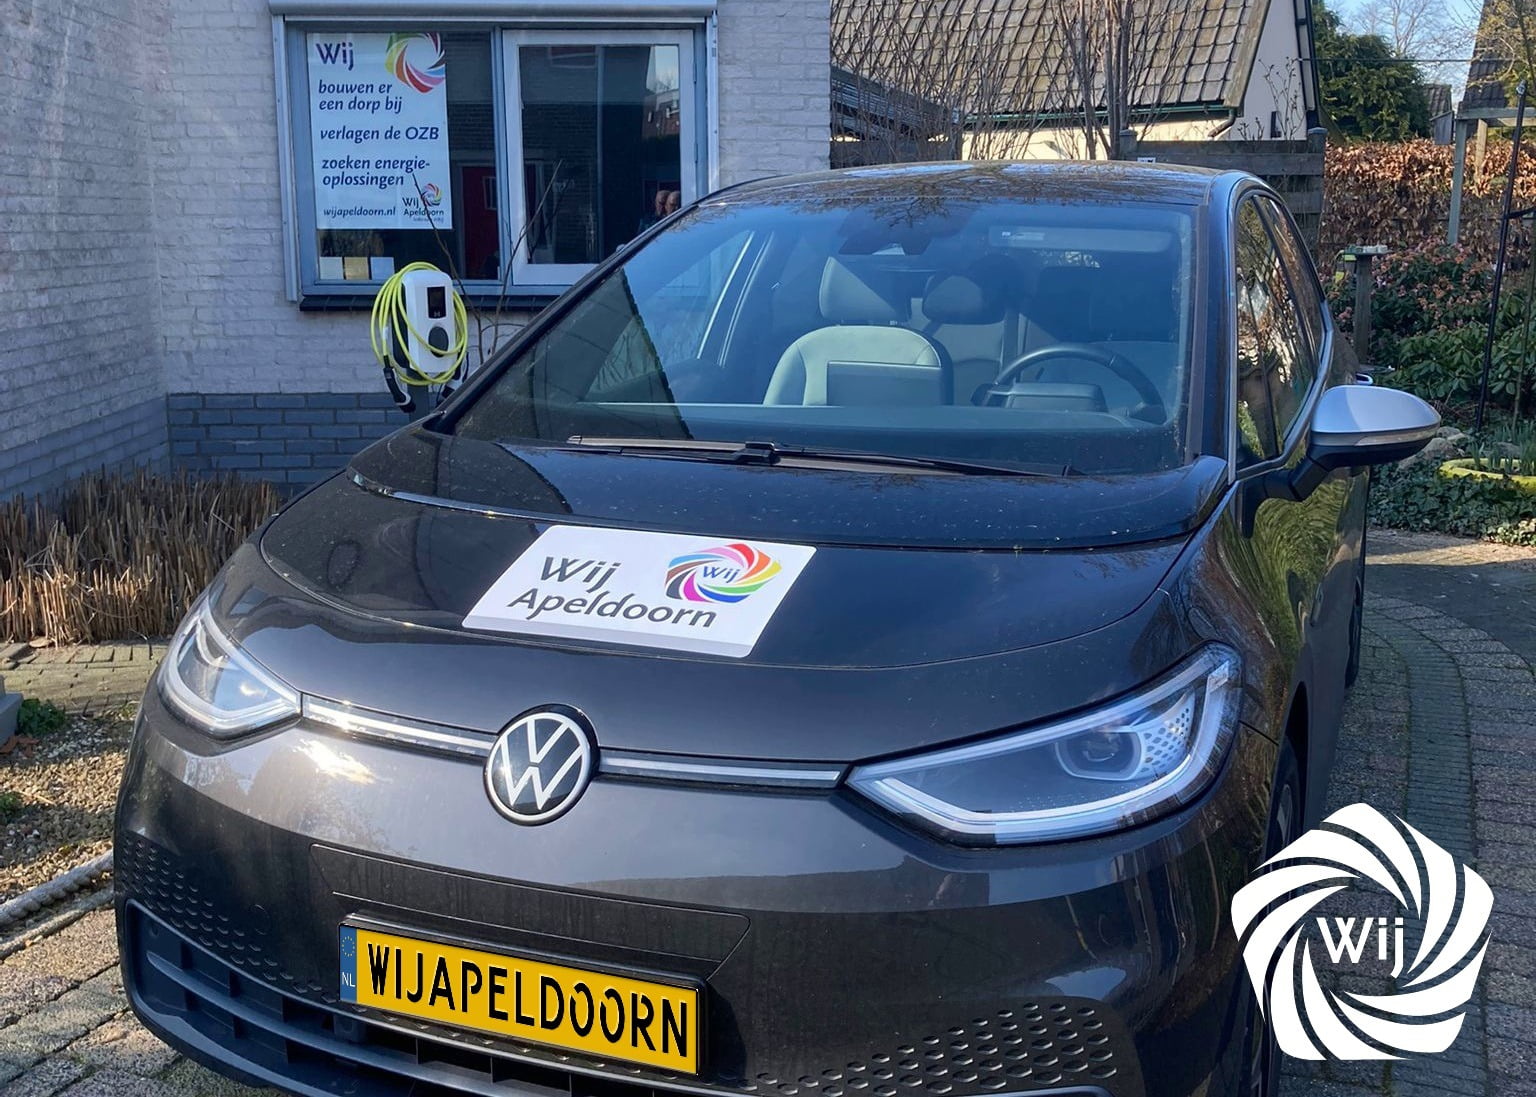 Nieuw: de WijApeldoorn Stem Taxi!